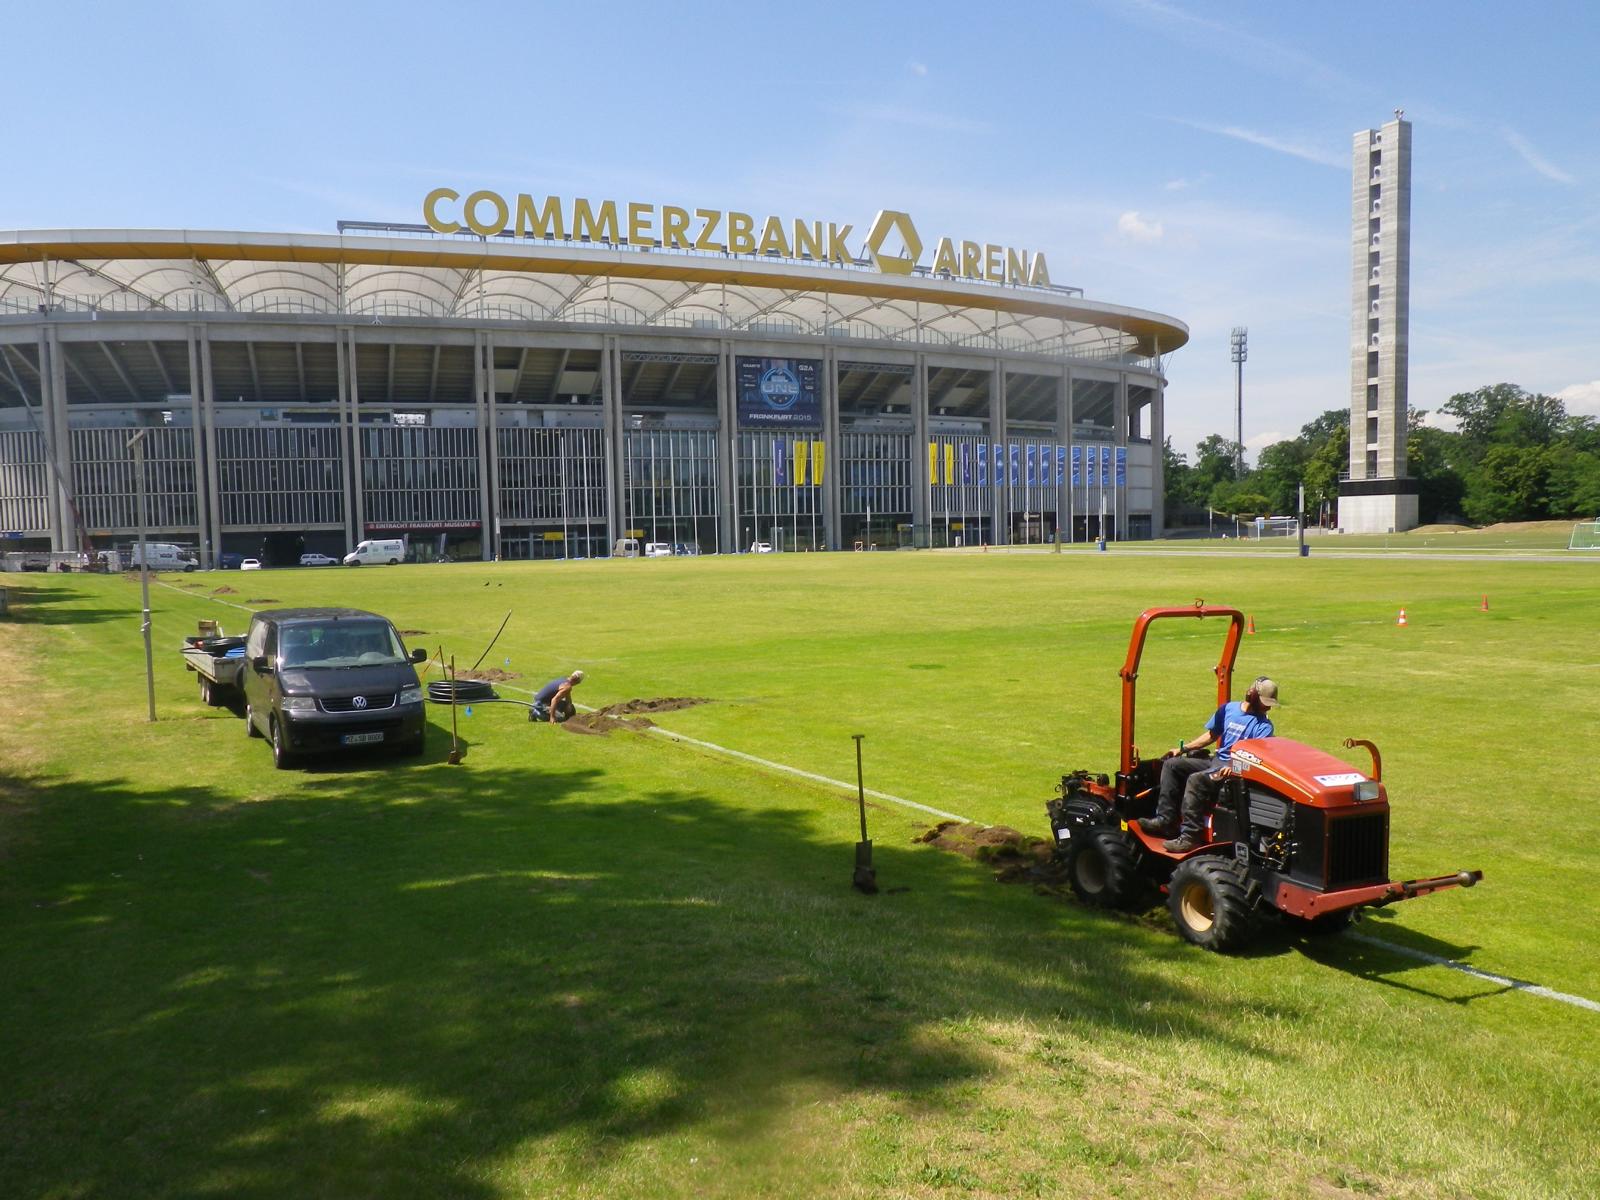 Commerzbank Arena, Frankfurt